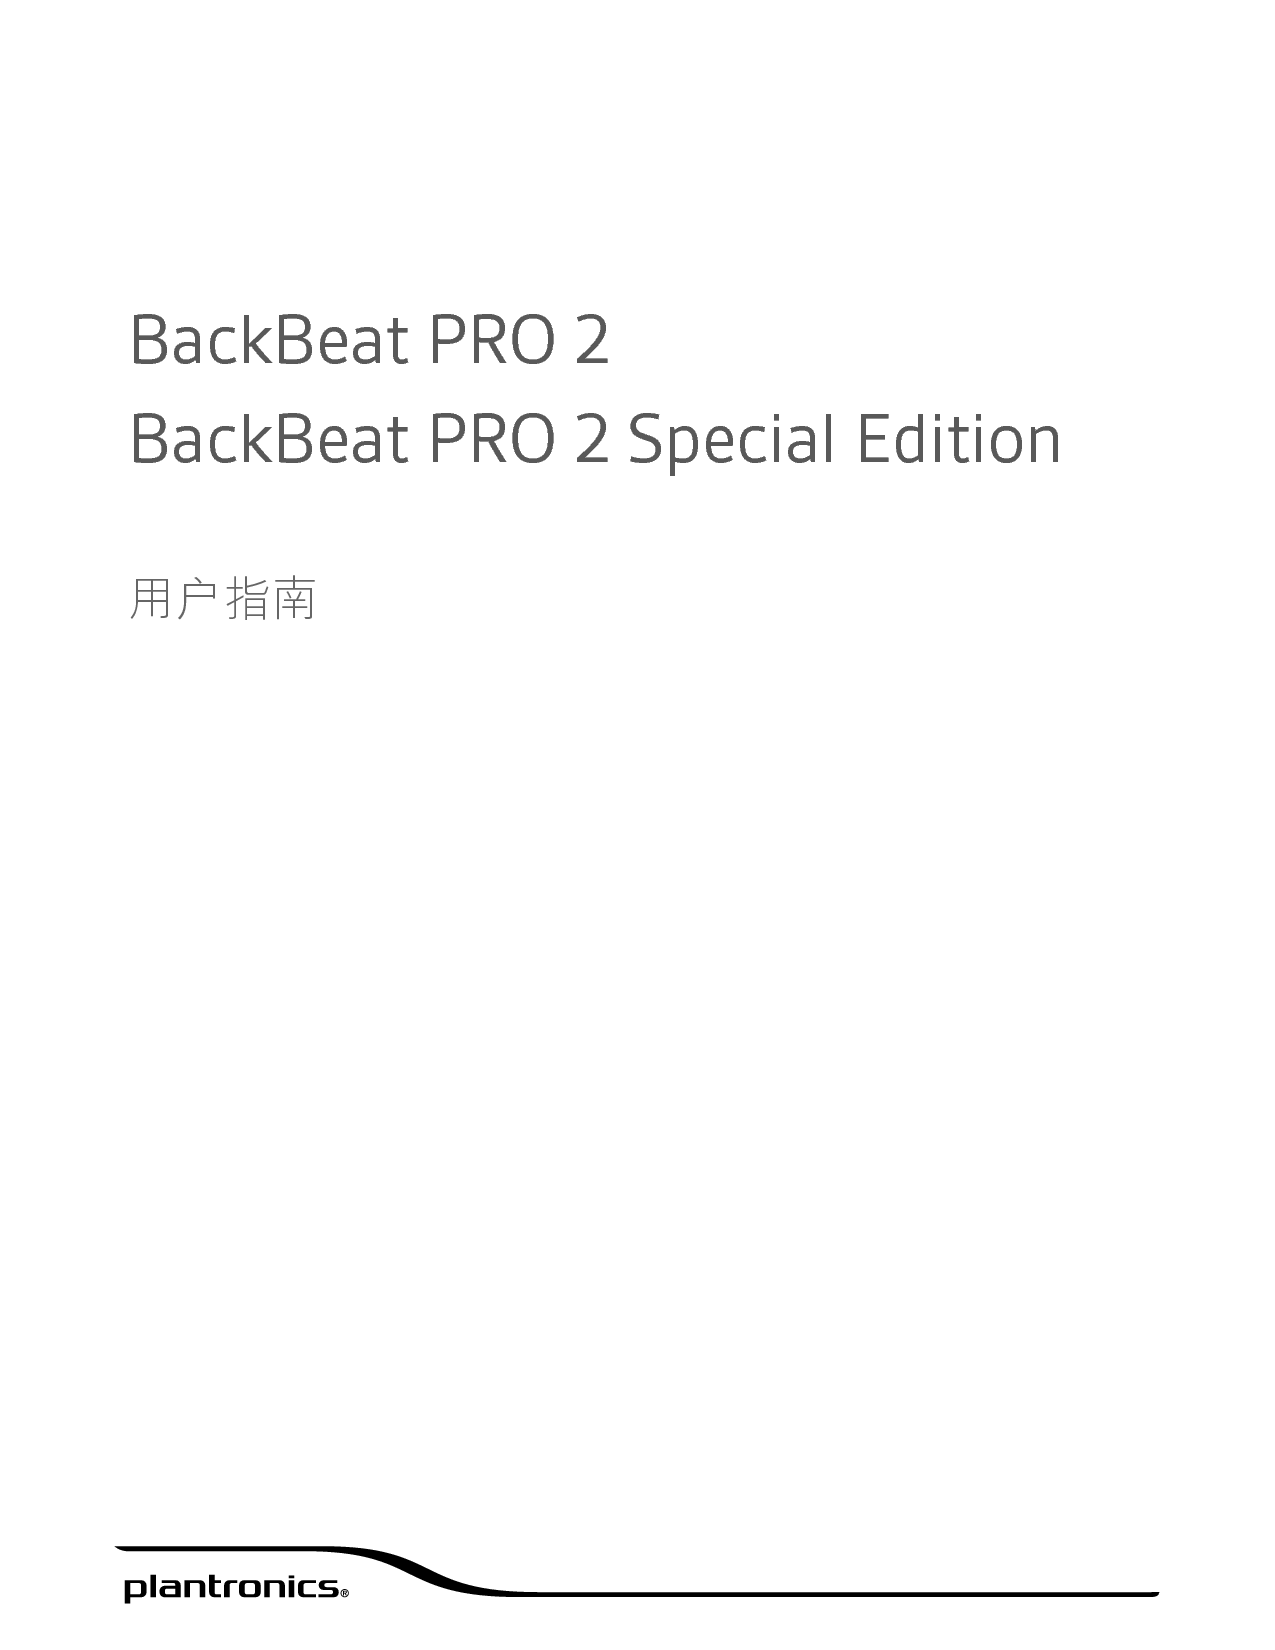 缤特力 Plantronics Backbeat Pro 2 用户指南 封面